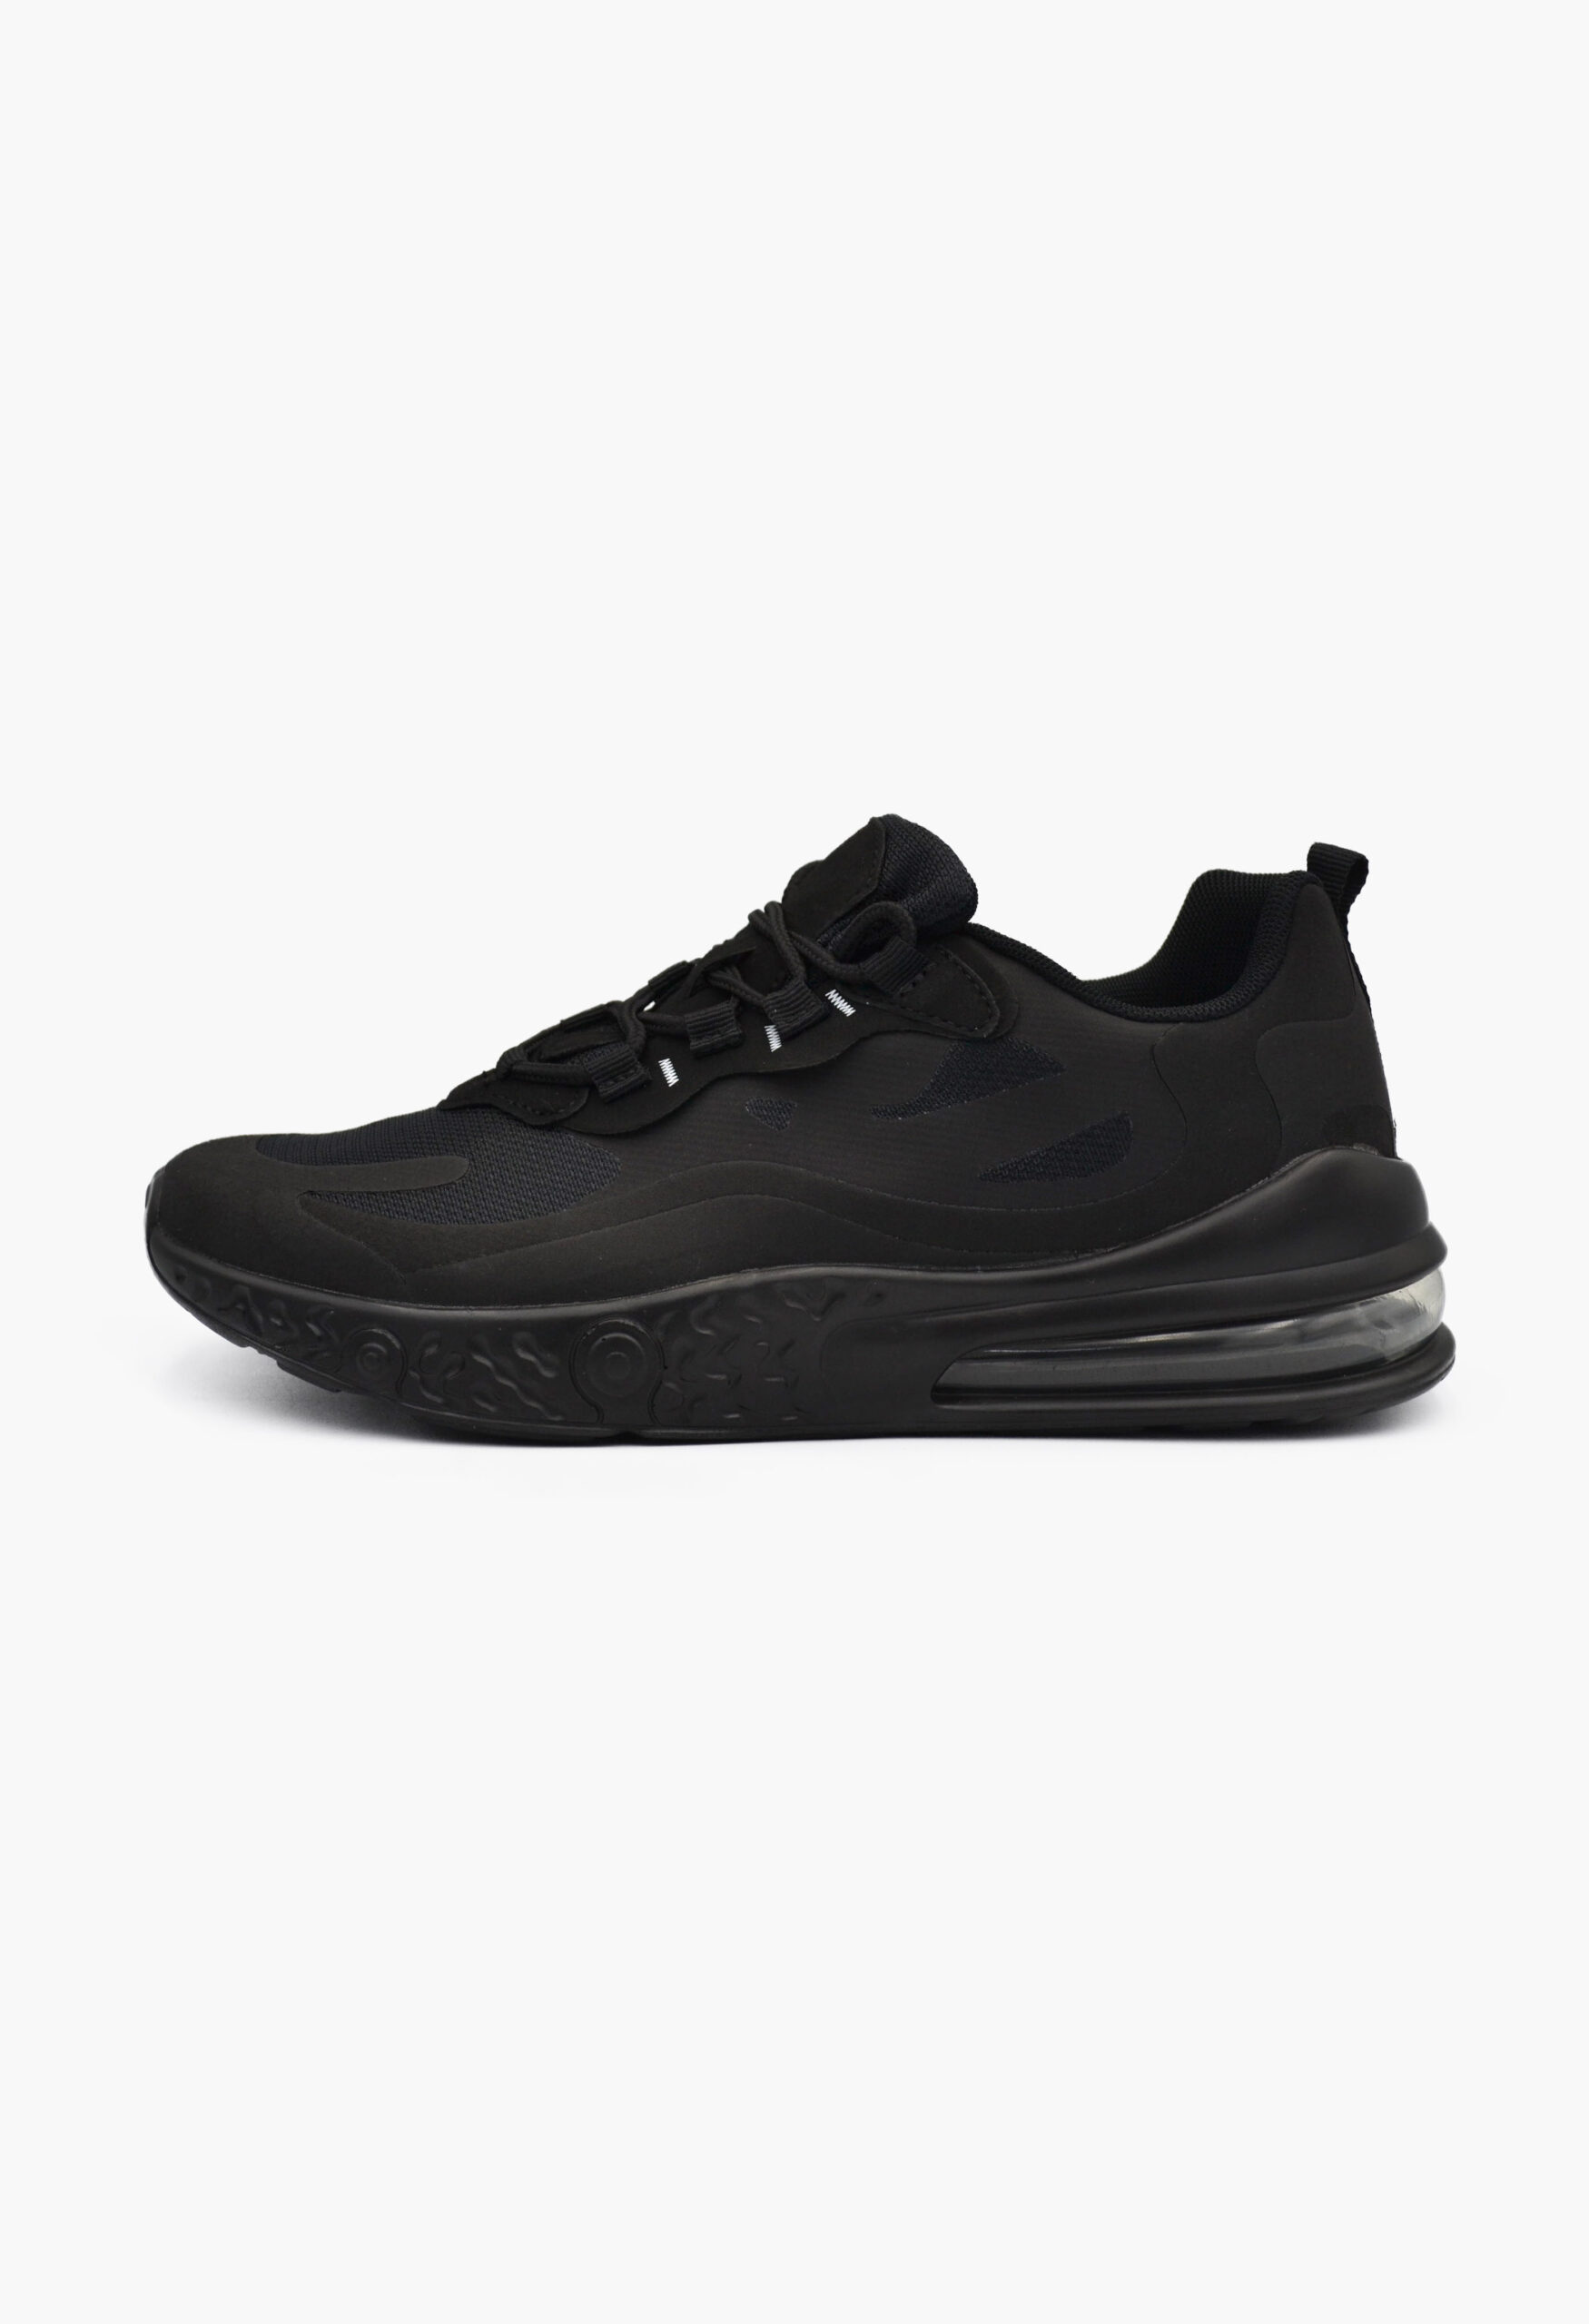 Αθλητικά Παπούτσια για Τρέξιμο Μαύρο / SD0169-all black Γυναικεία Αθλητικά και Sneakers joya.gr